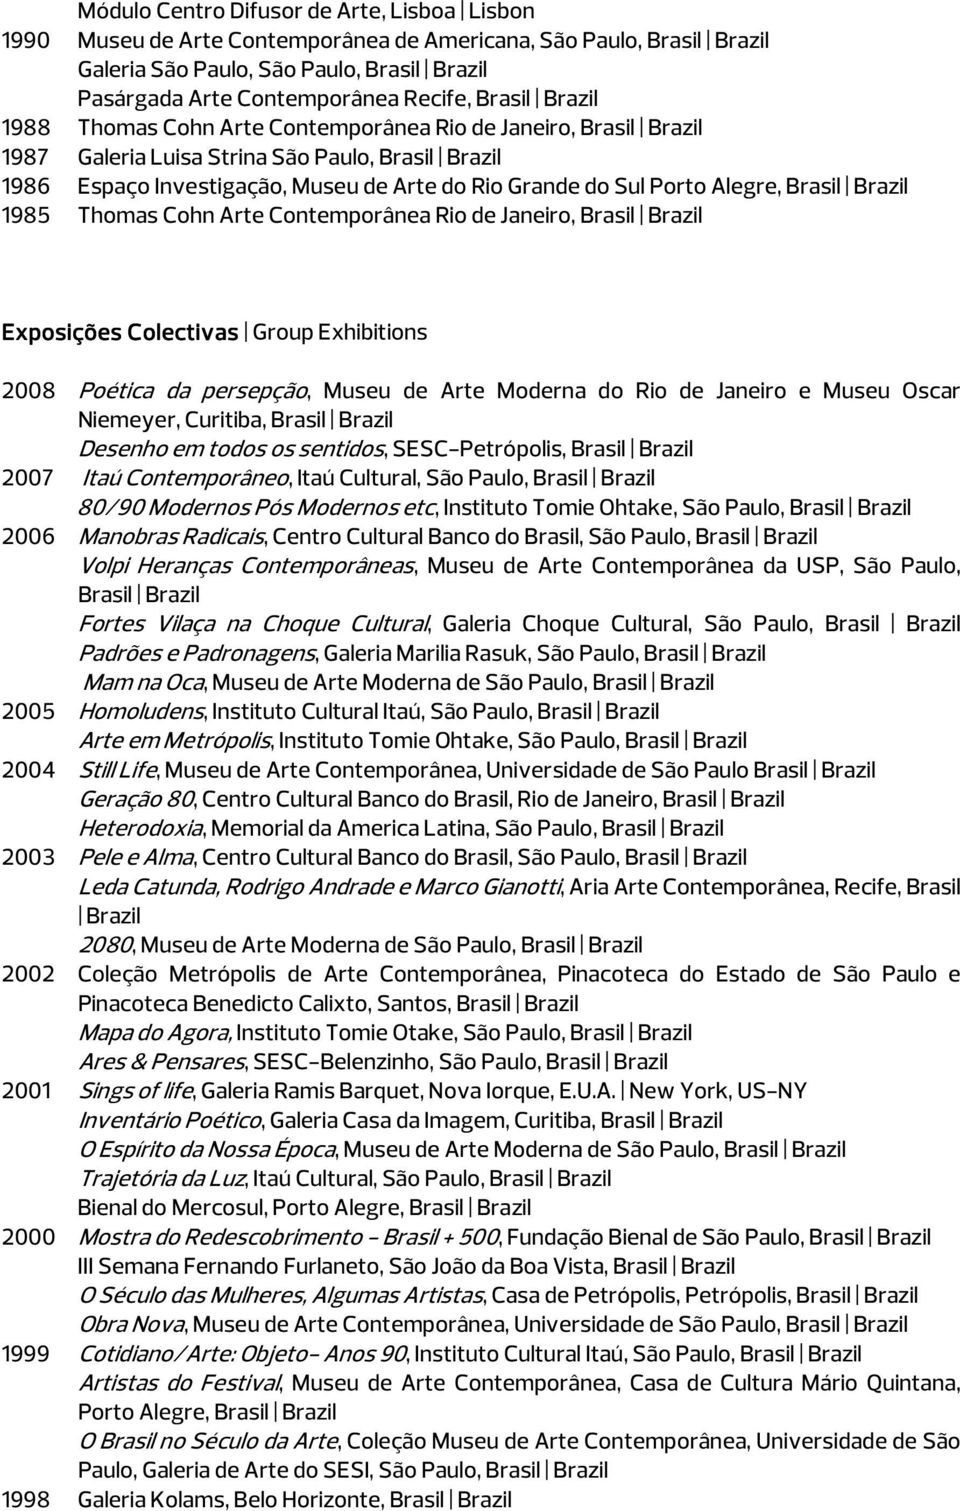 Exposições Colectivas Group Exhibitions 2008 Poética da persepção, Museu de Arte Moderna do Rio de Janeiro e Museu Oscar Niemeyer, Curitiba, Desenho em todos os sentidos, SESC-Petrópolis, 2007 Itaú